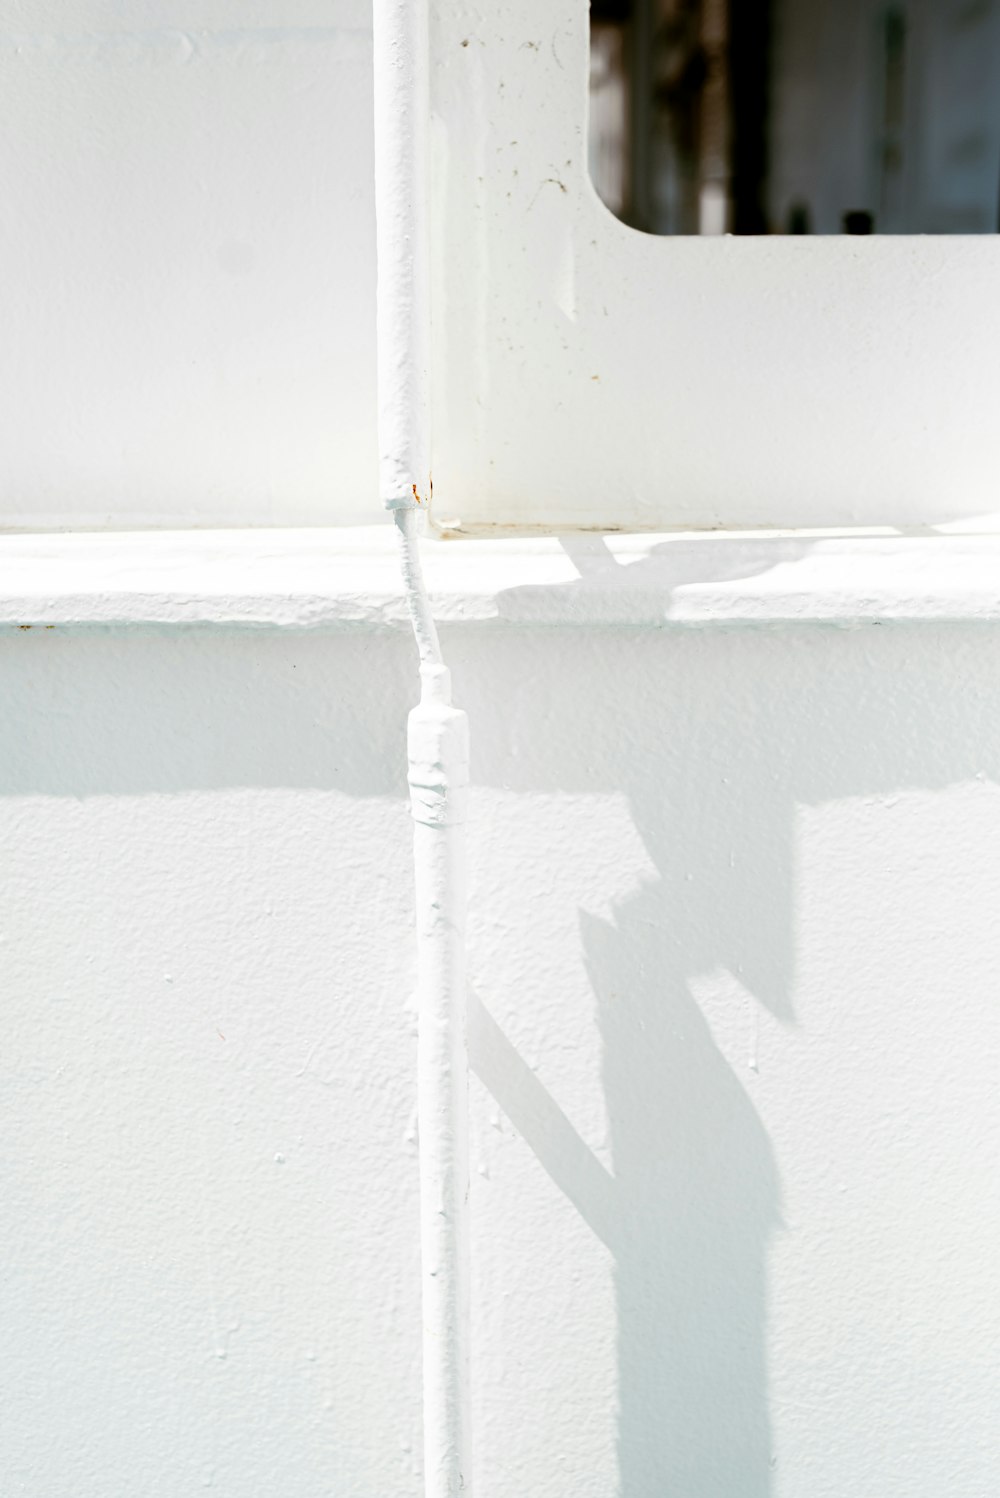 L’ombre d’un panneau de signalisation sur un mur blanc